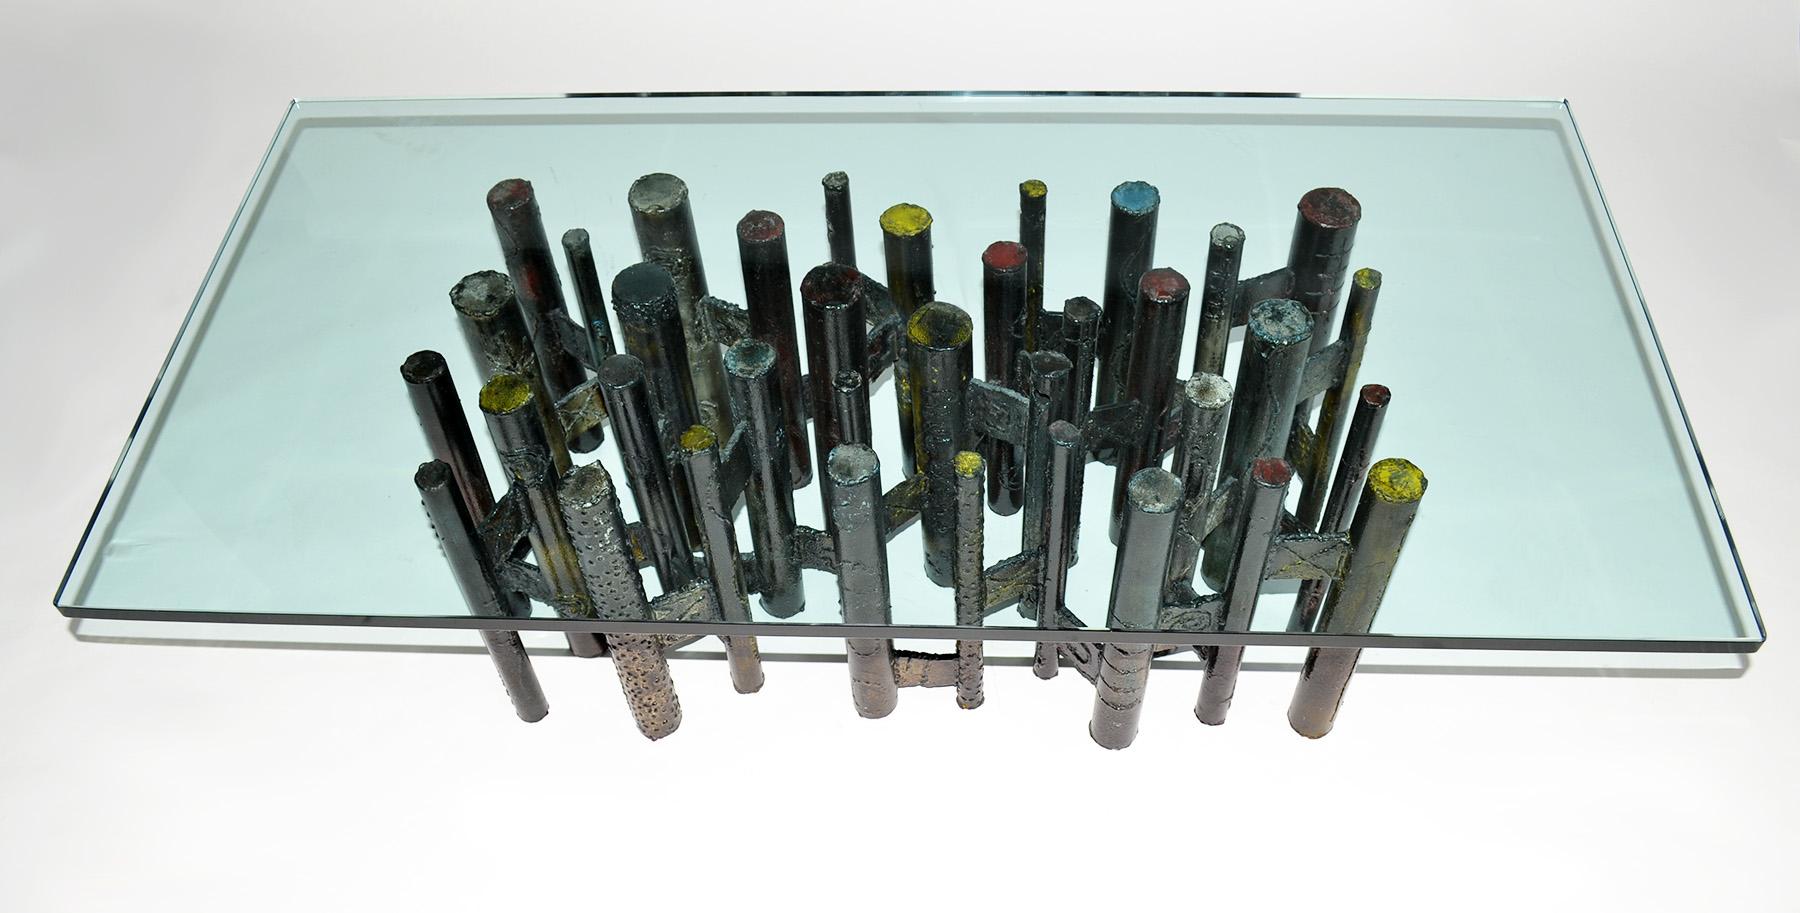 Grande table basse du Paul Evans Studio en acier soudé et peint, 1967. Acier peint, oxydé, découpé au chalumeau, soudé, de style brutaliste avec plateau en verre surdimensionné de 57